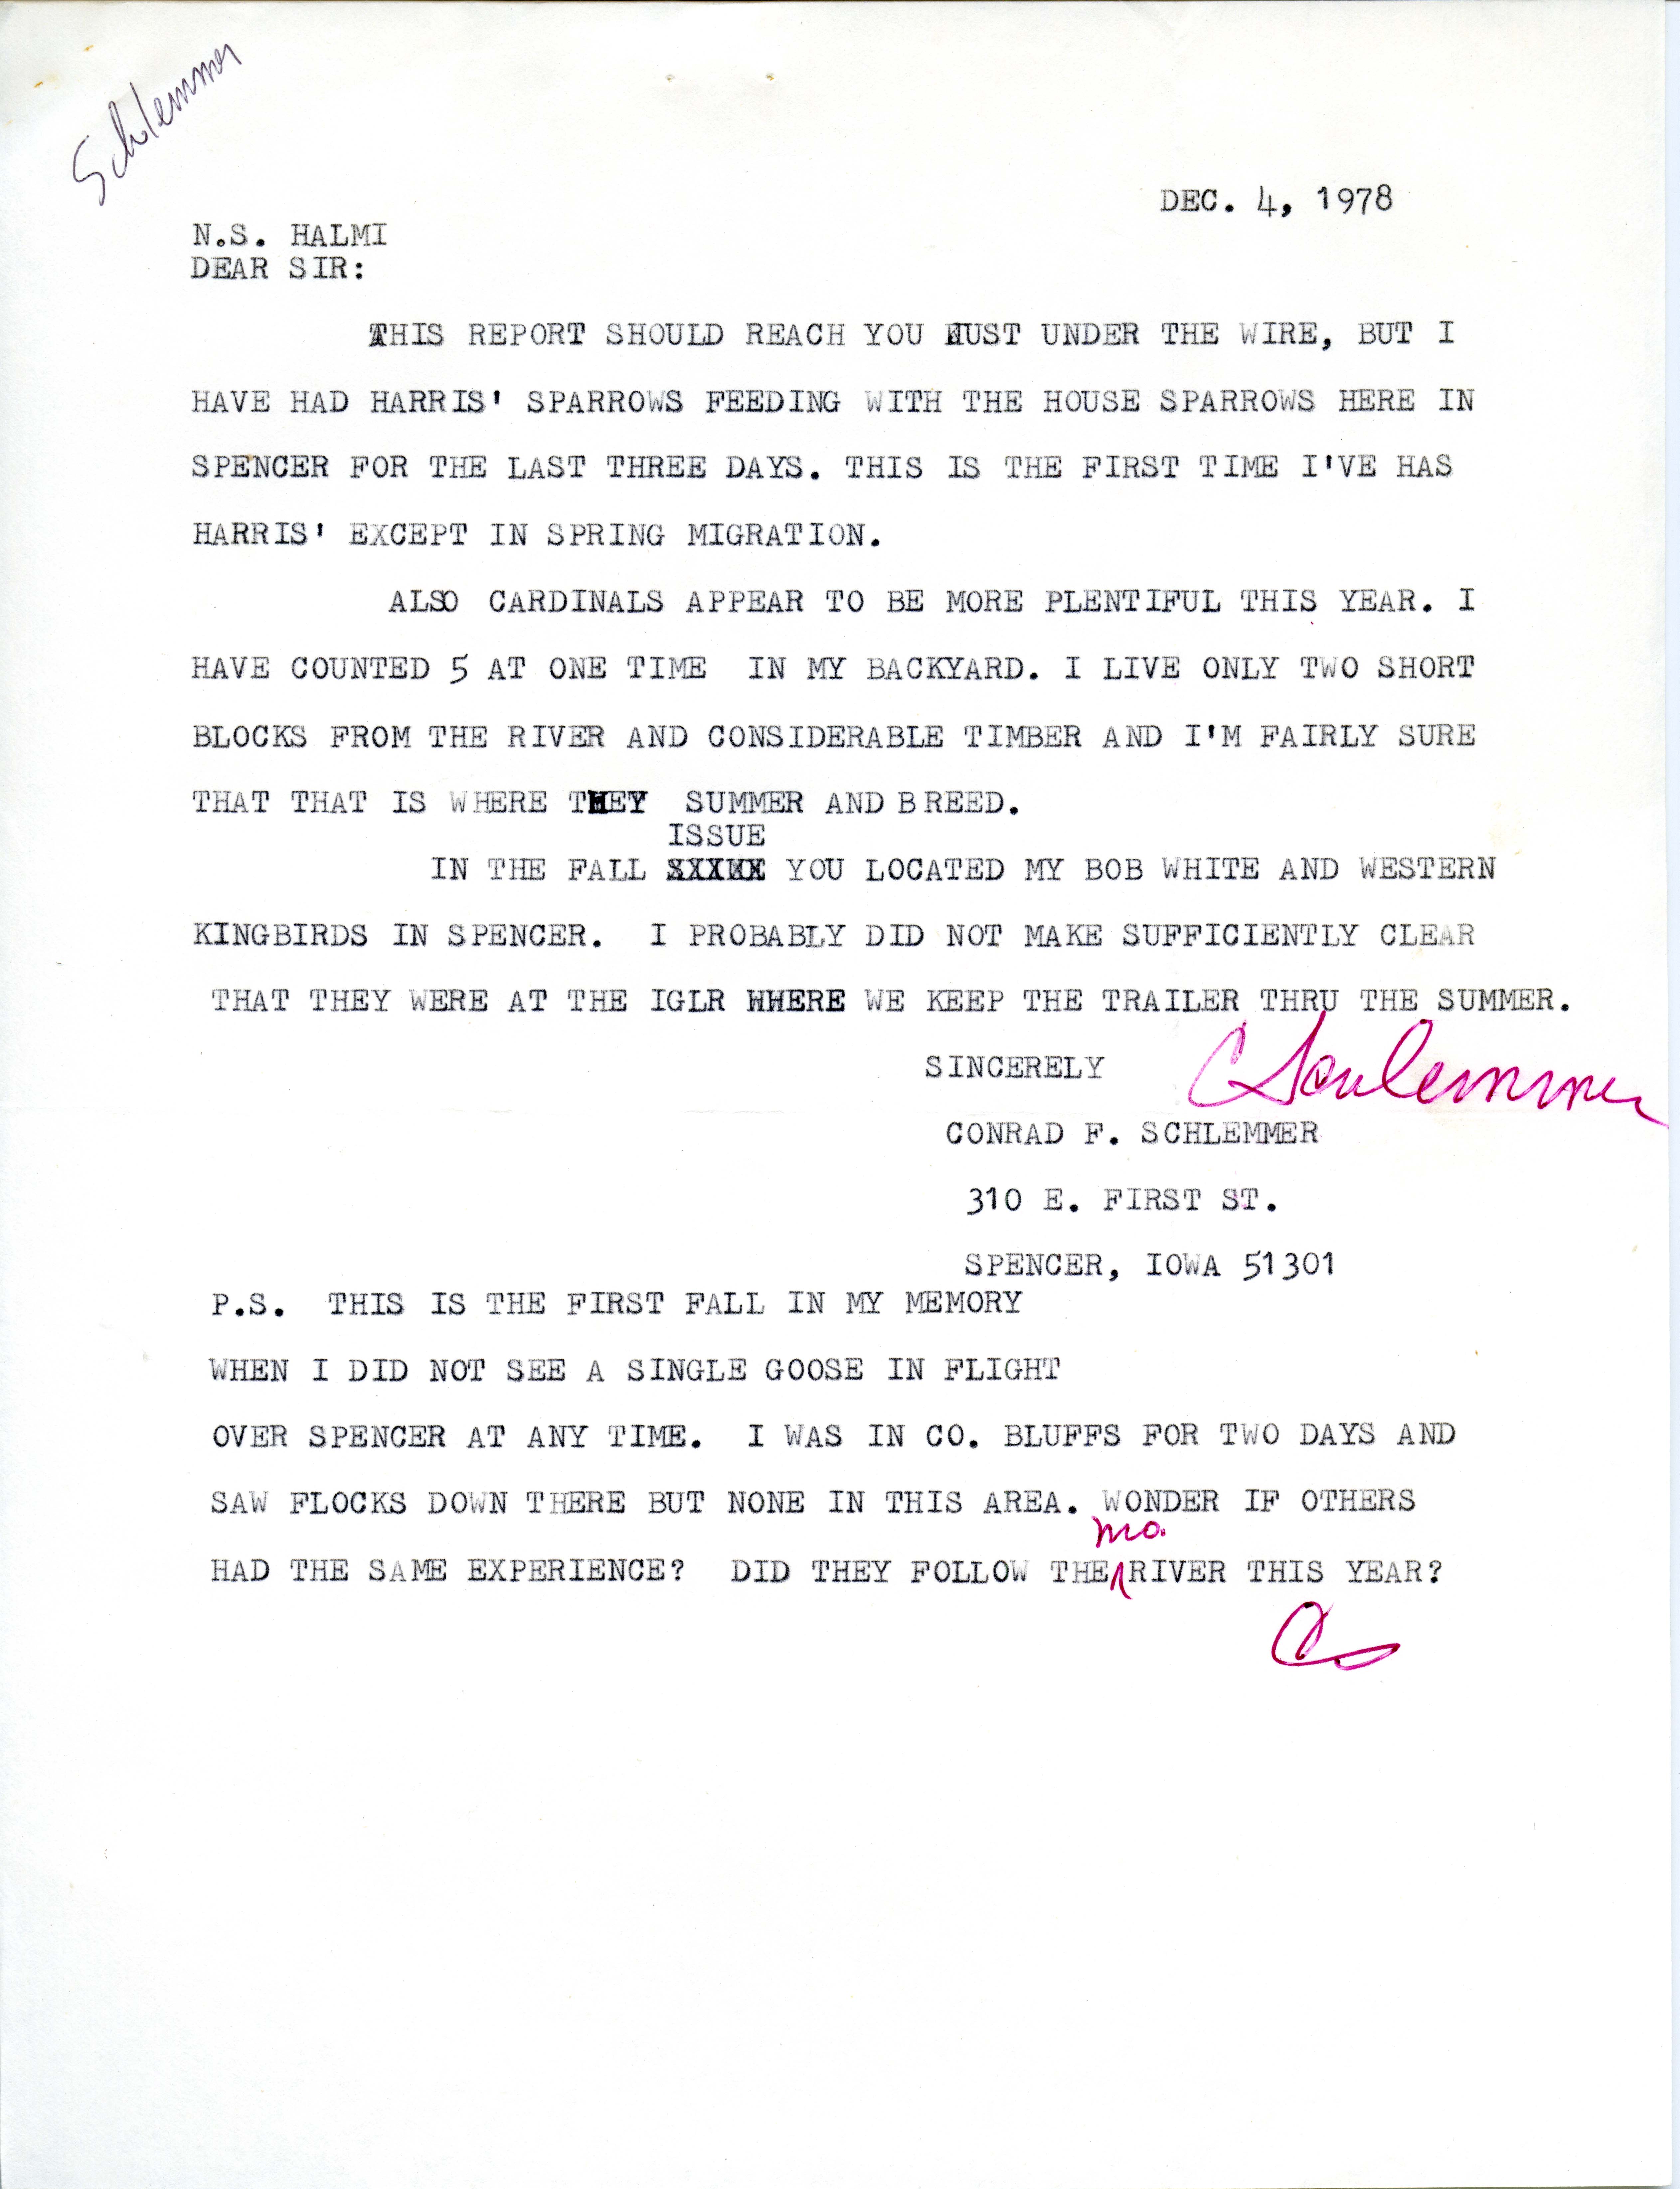 Conrad F. Schlemmer letter to Nicholas S. Halmi regarding bird sightings, December 4, 1978 